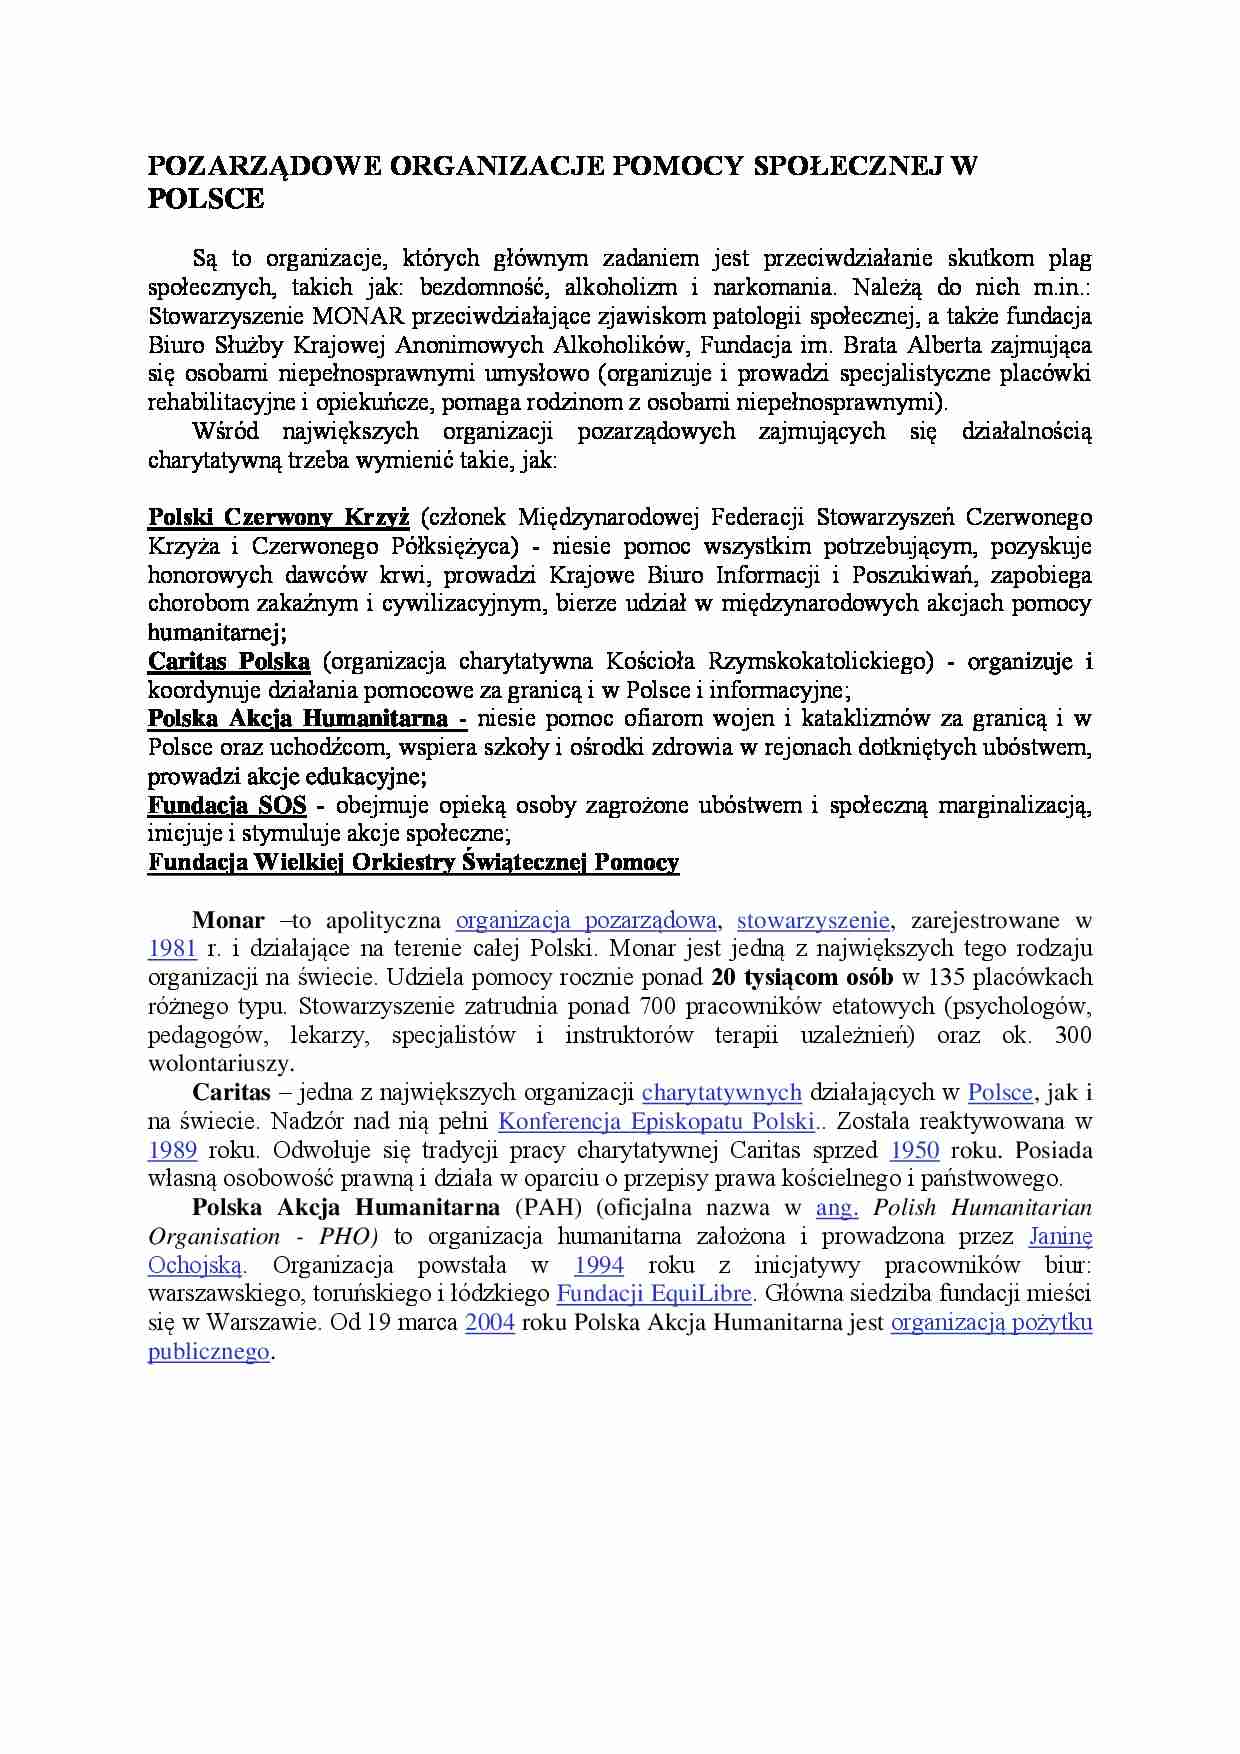 Pozarządowe organizacje pomocy społecznej w Polsce - strona 1